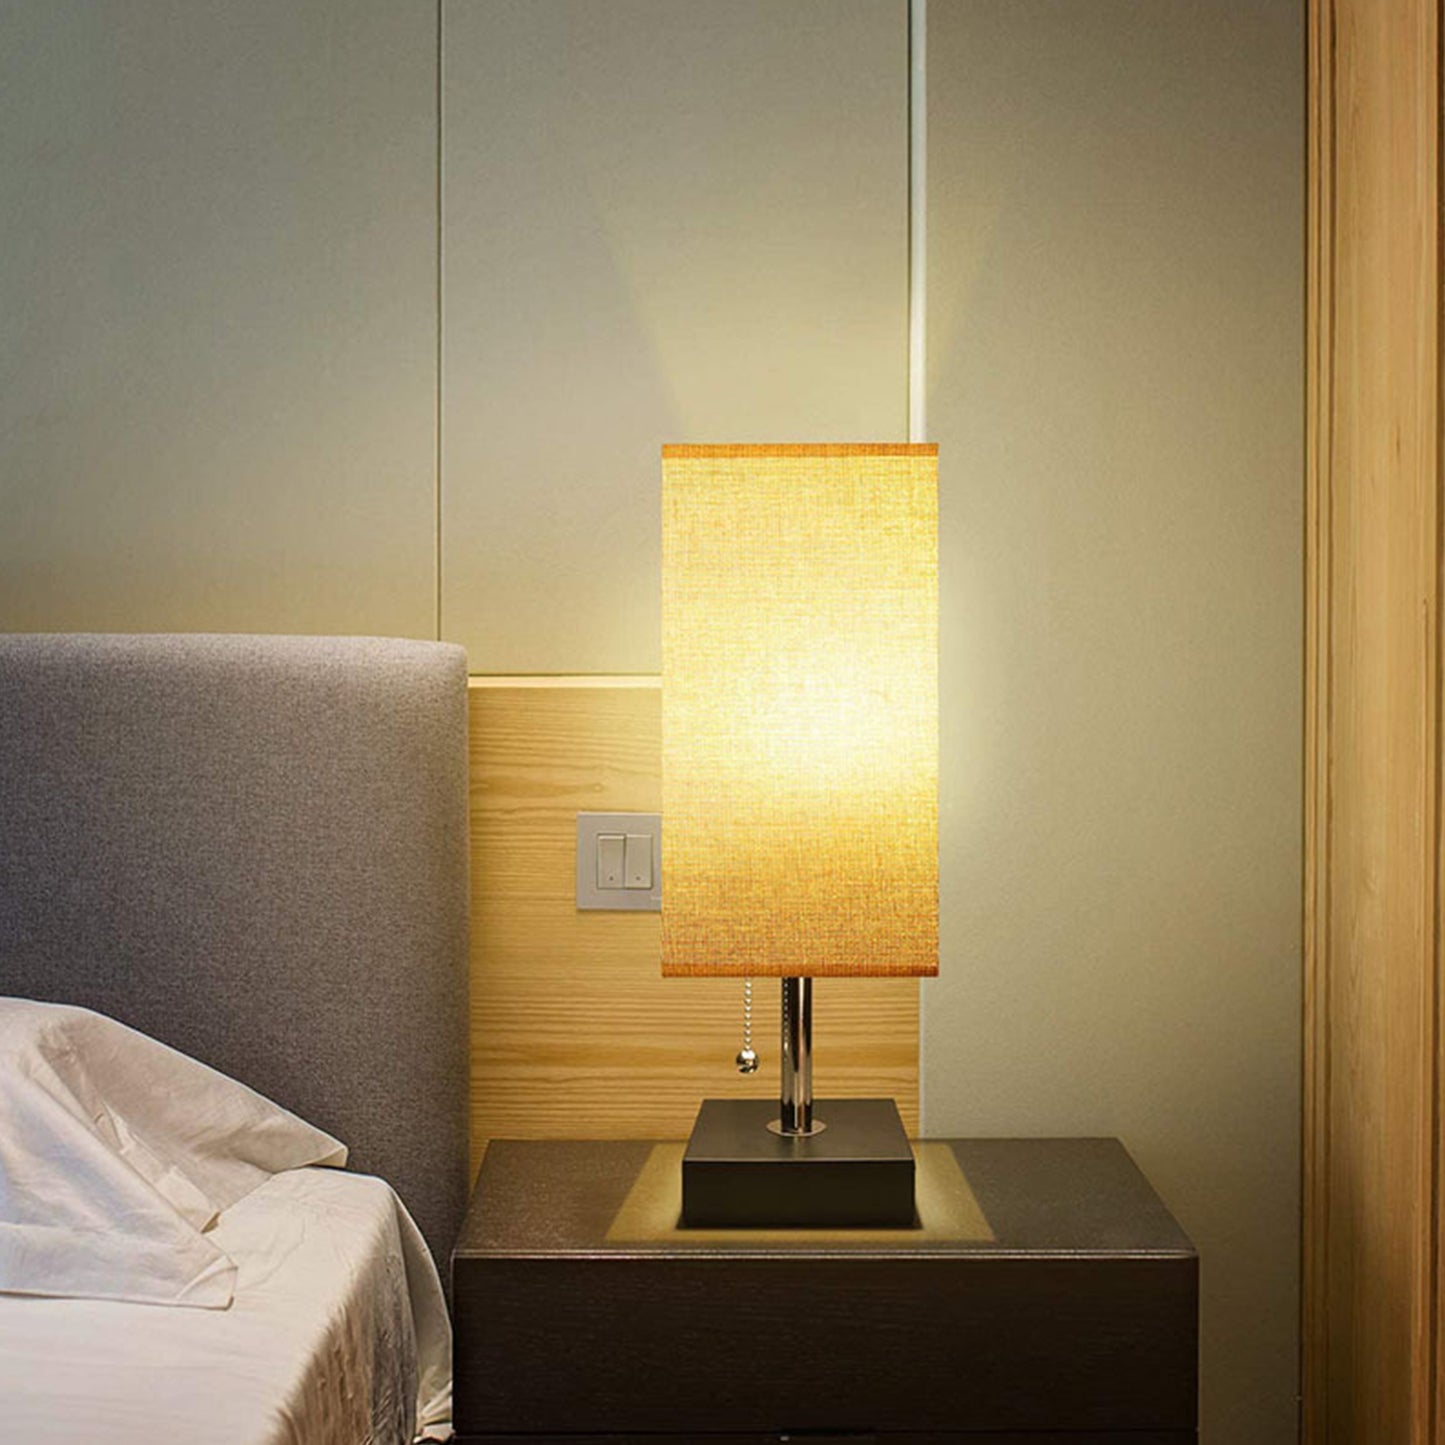 Modern Table Lamp Desk Beside Nightstand Lamps Reading Light Bedroom Dorm